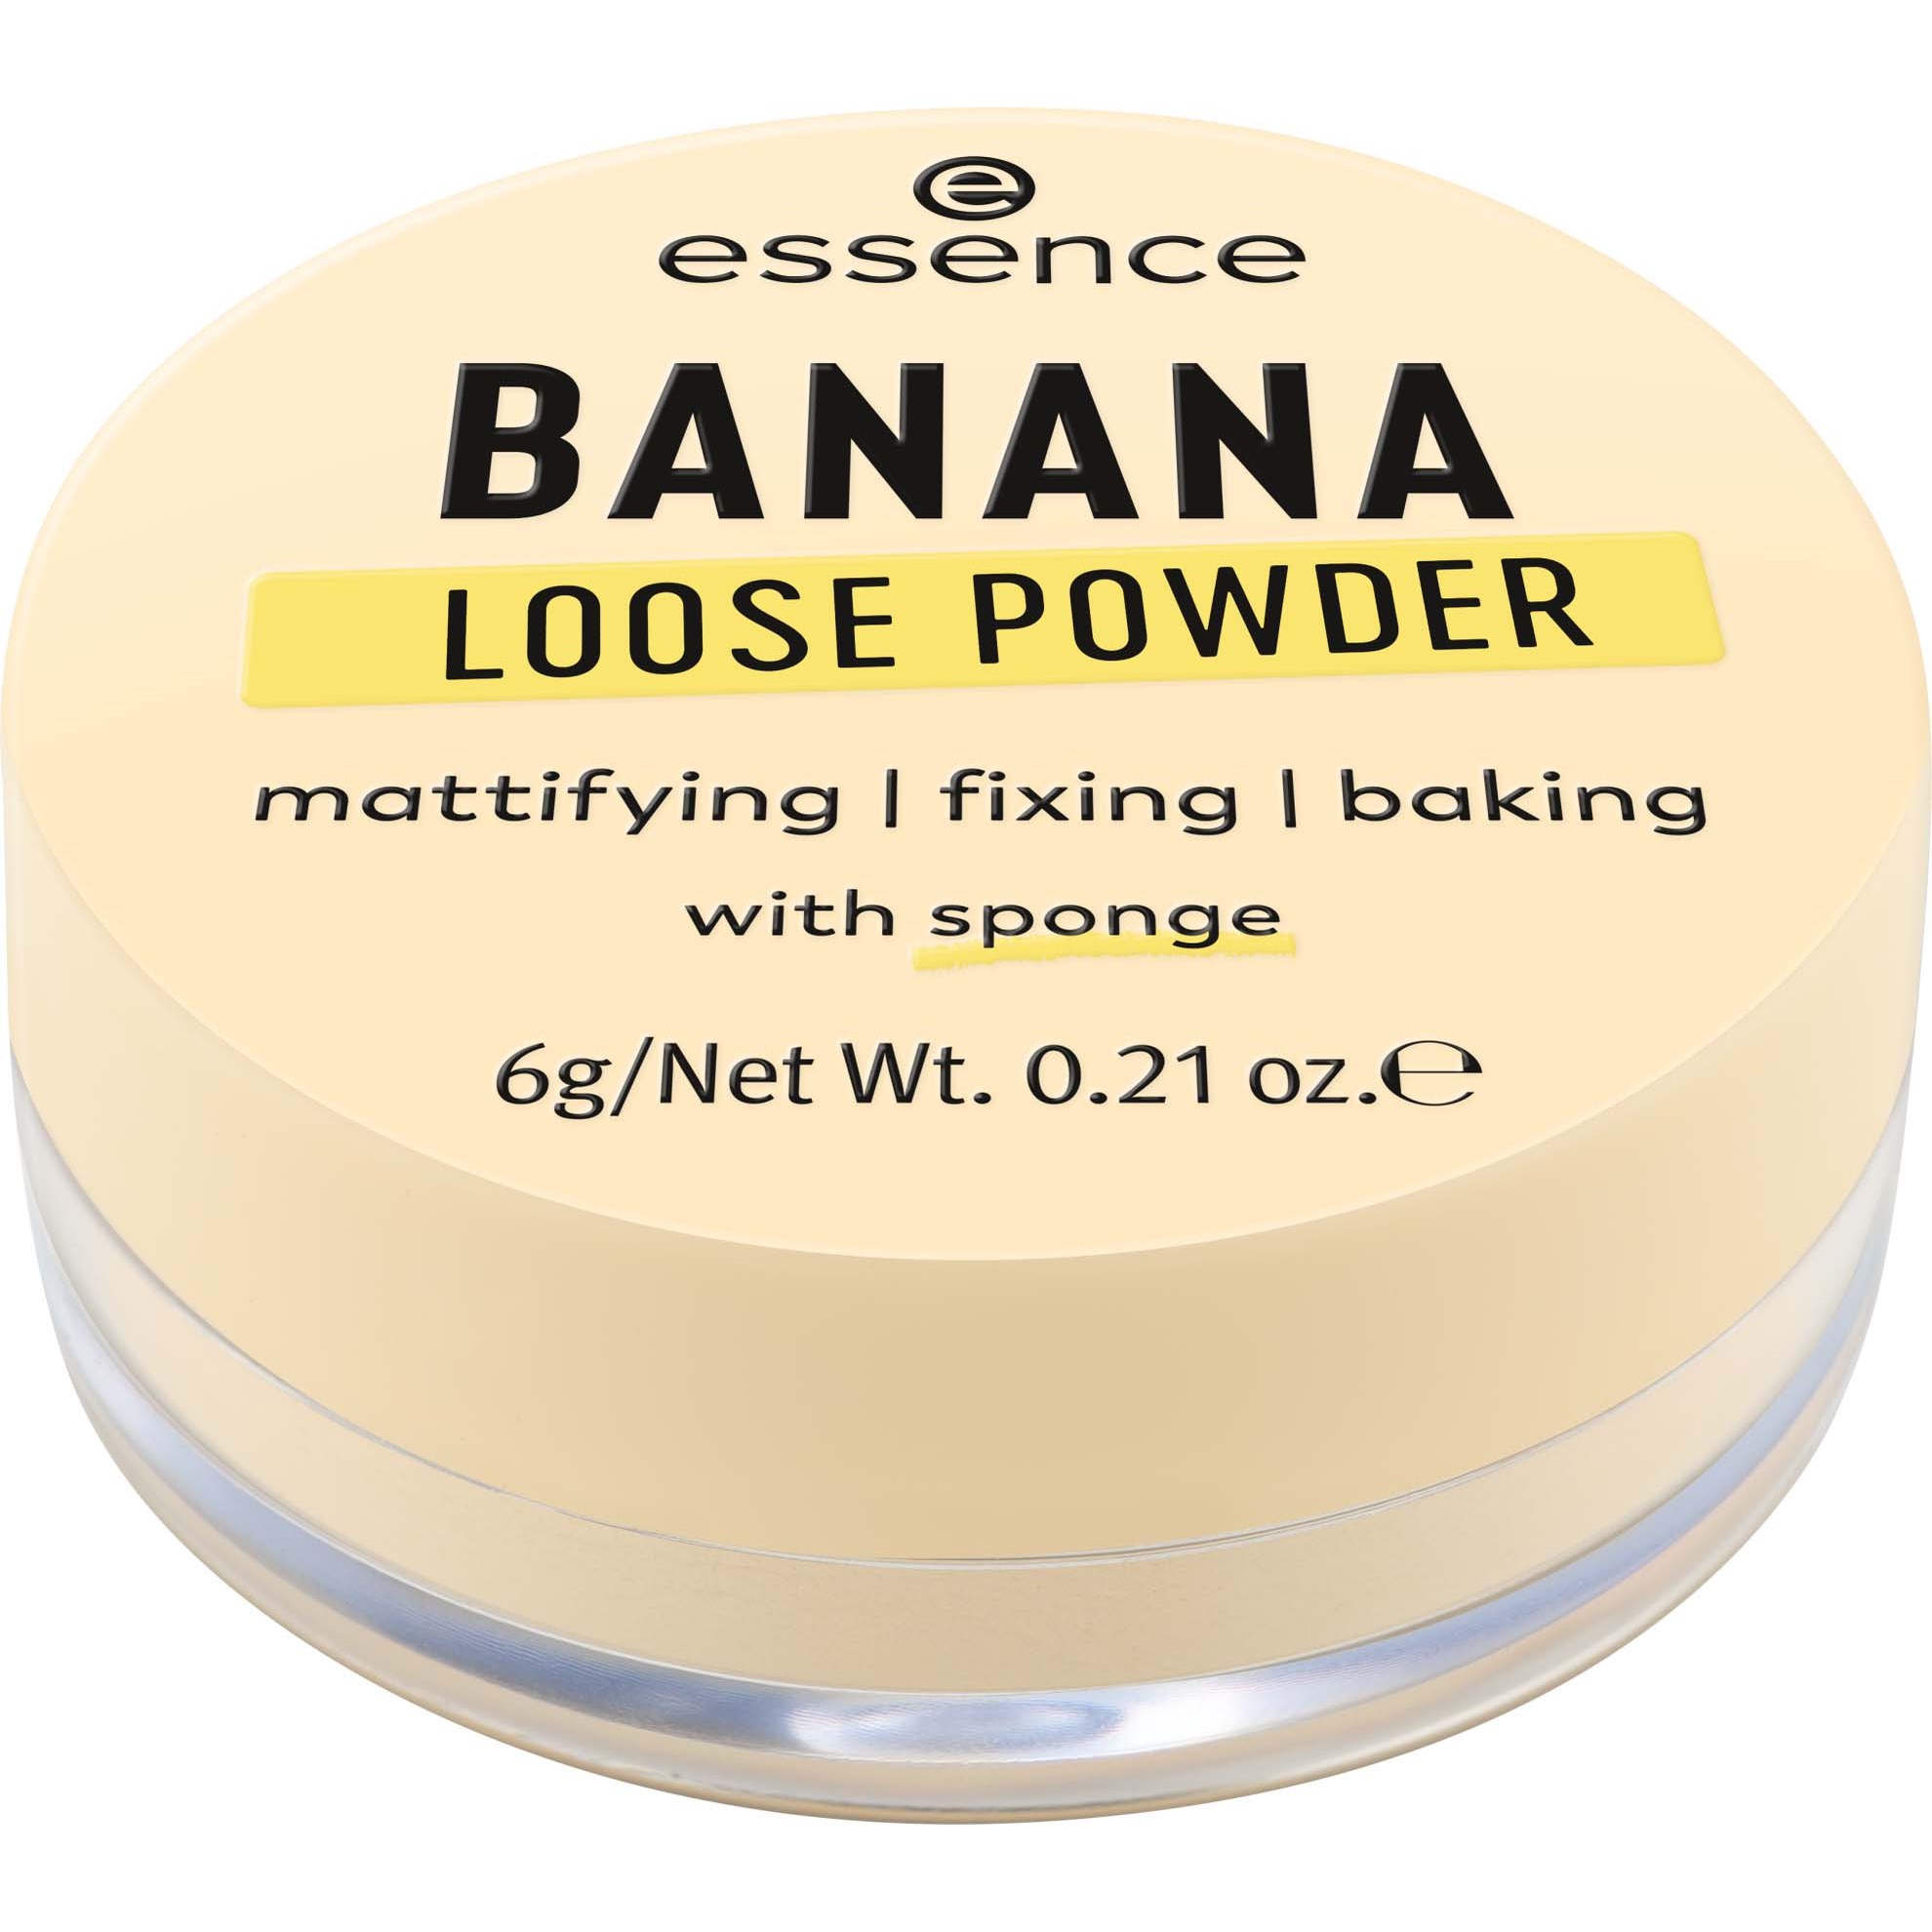 Läs mer om essence Banana Loose Powder